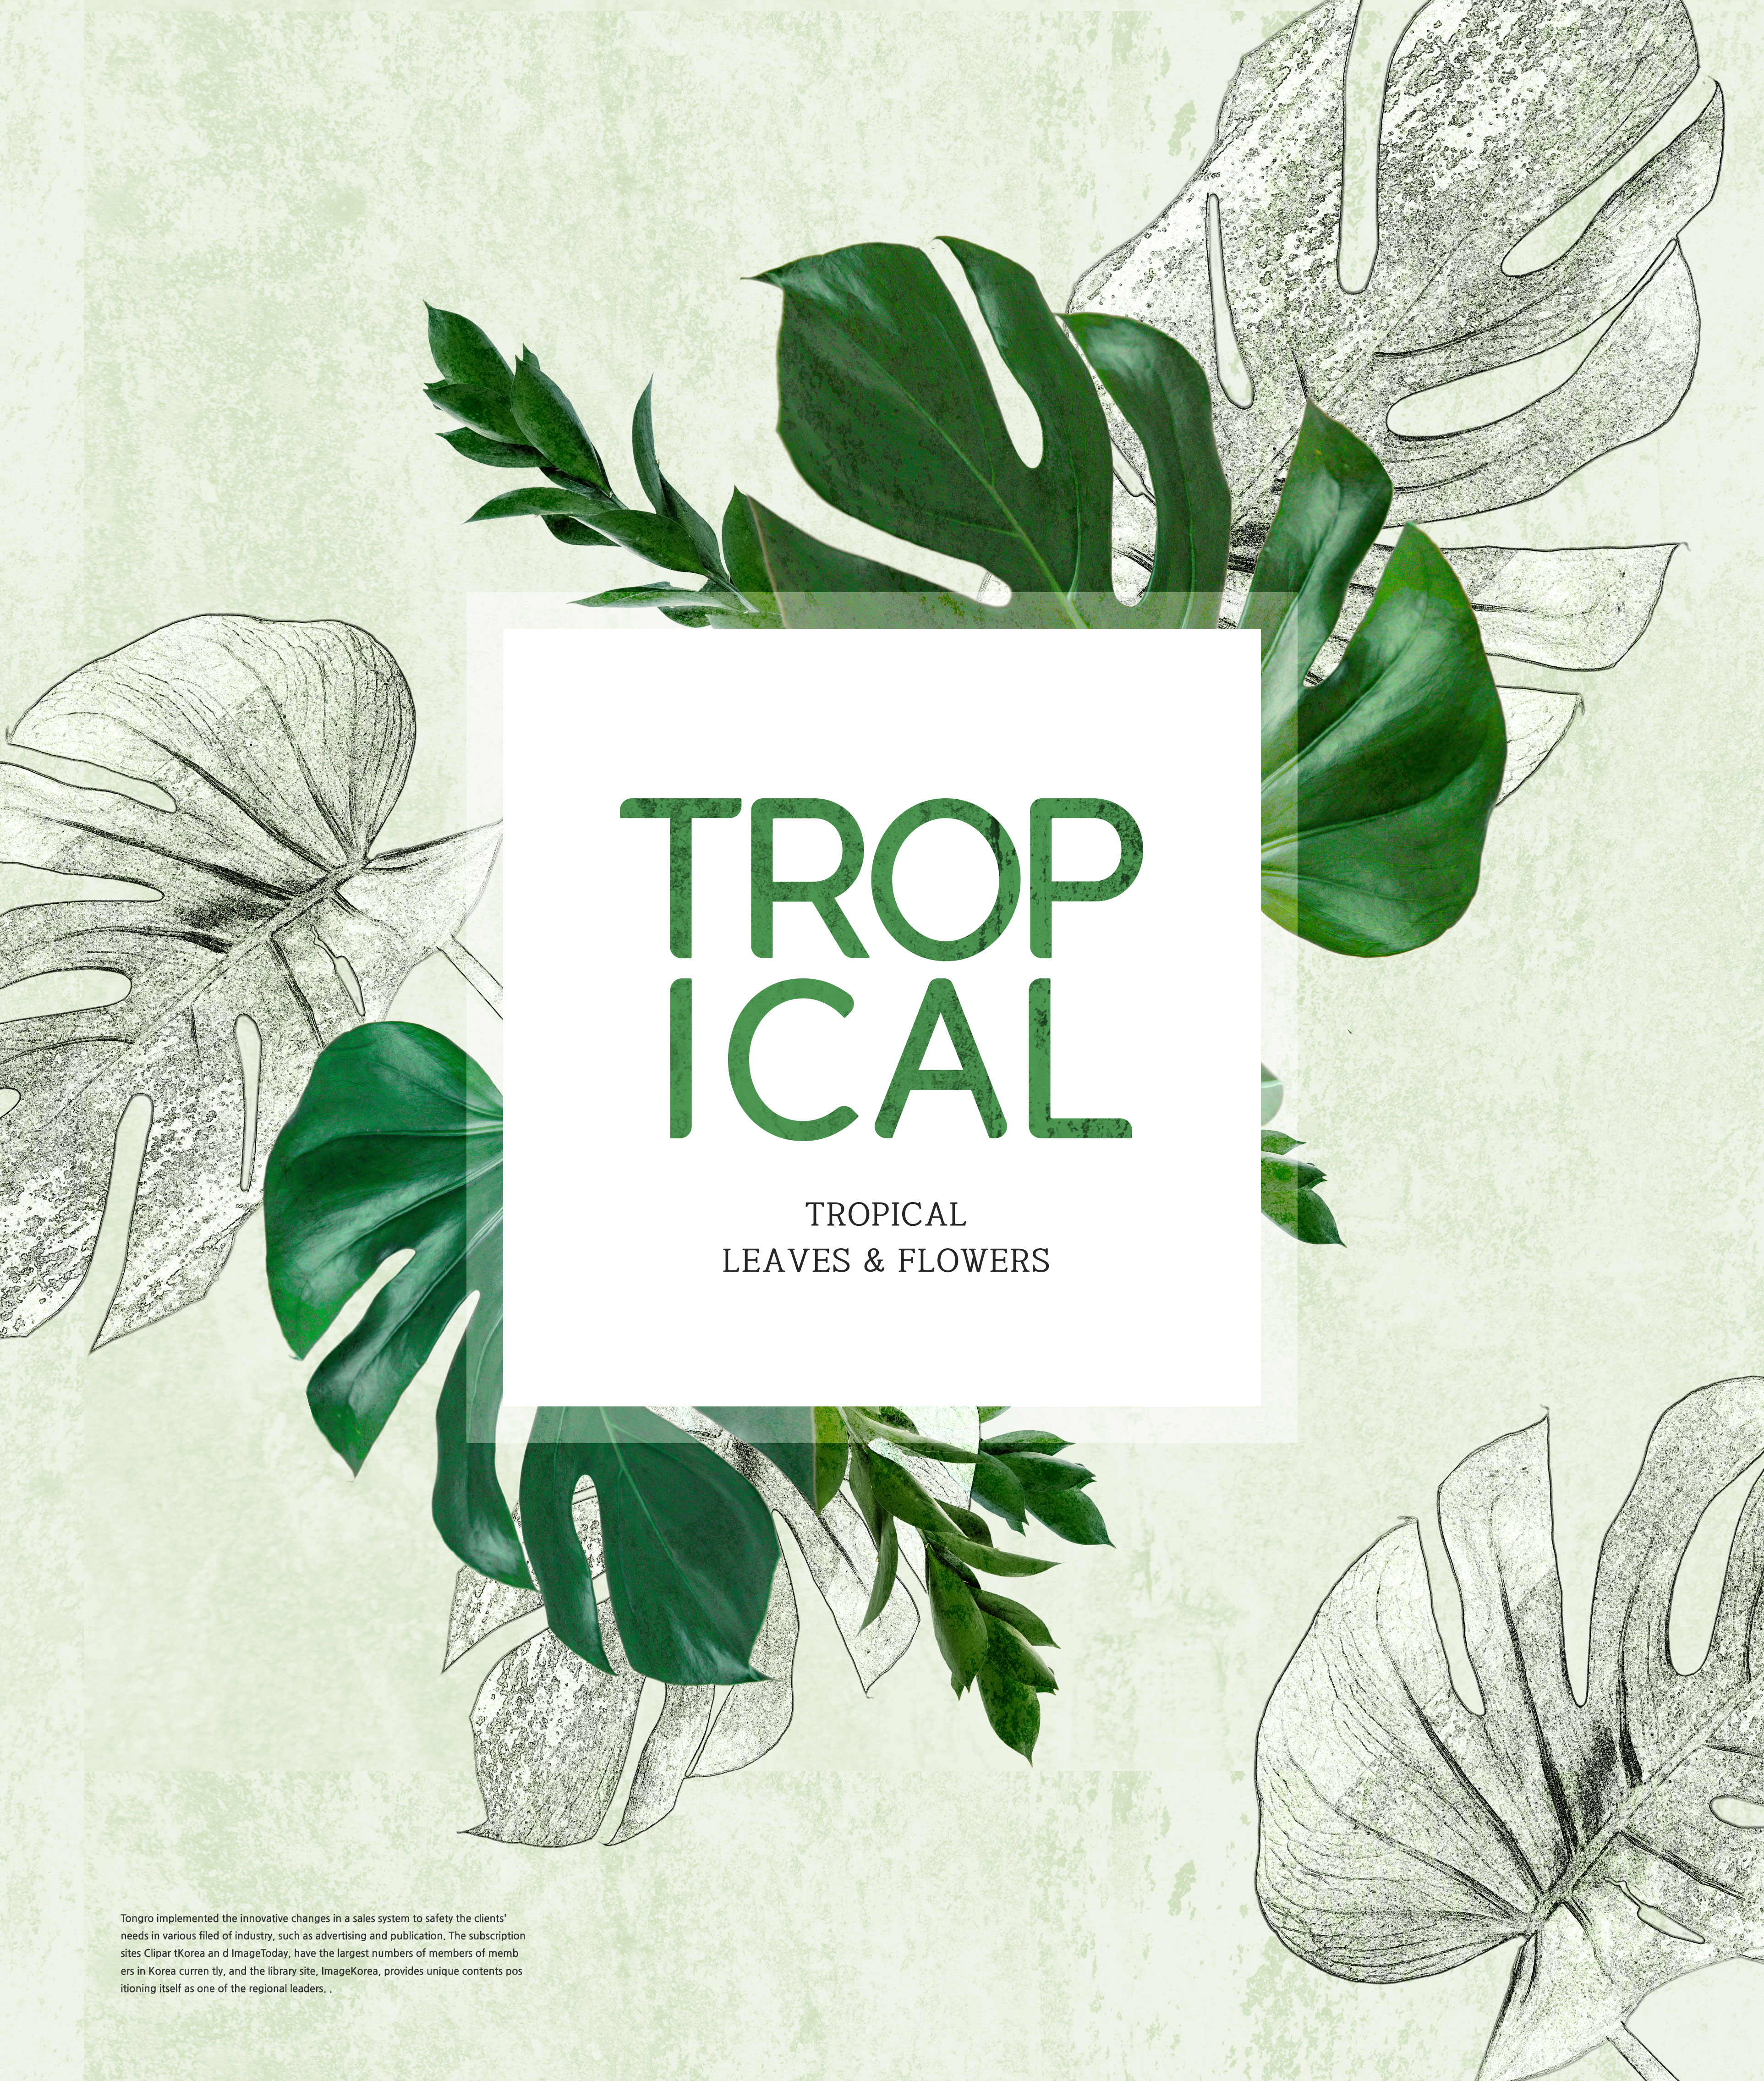 热带主题叶子&花卉图案海报设计素材插图(5)